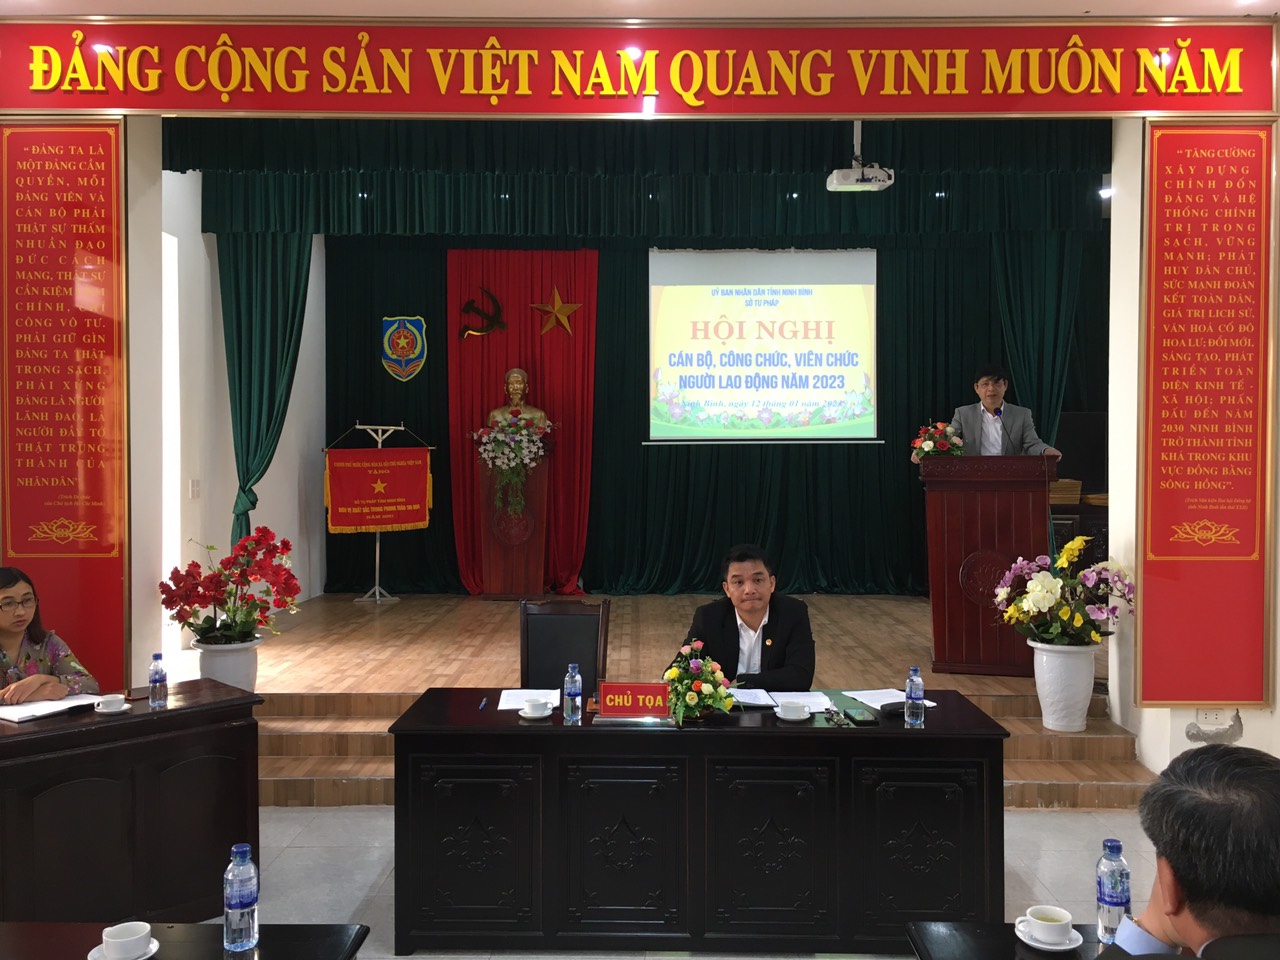 Công đoàn Sở Tư pháp tỉnh Ninh Bình tổ chức Hội nghị cán bộ công chức viên chức, người lao động năm 2023